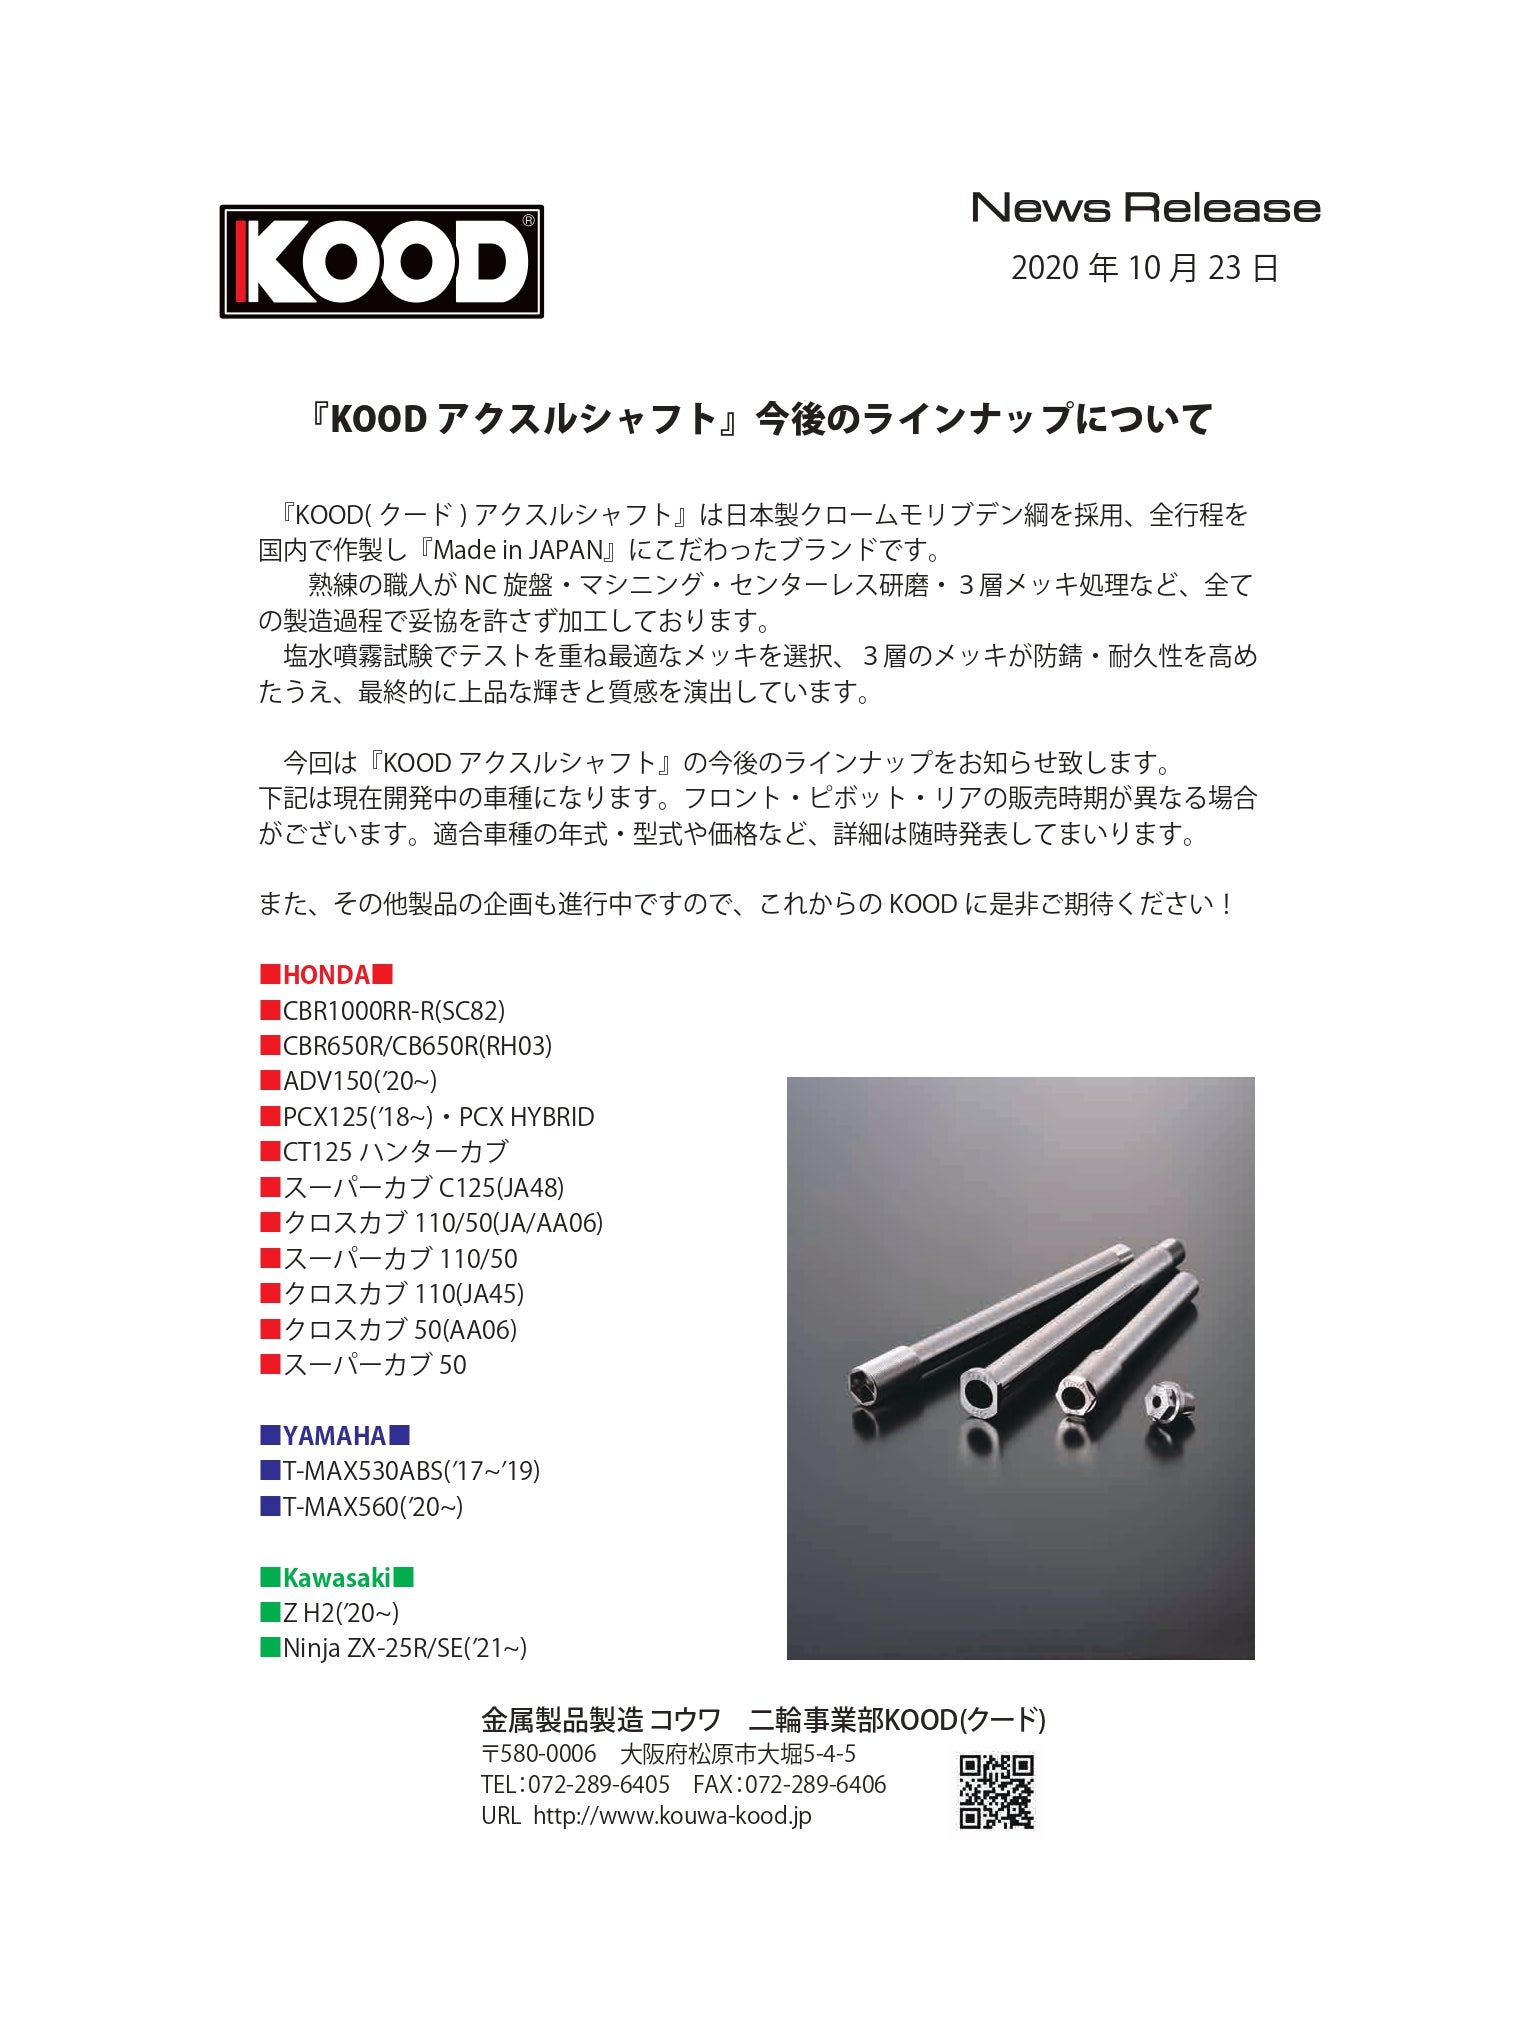 Ninja ZX-25Rやハンターカブ等『KOOD アクスルシャフト』今後のラインナップについて | クロモリアクスルシャフト「KOOD(クード)」金属製品製造コウワ  二輪部門ブログ